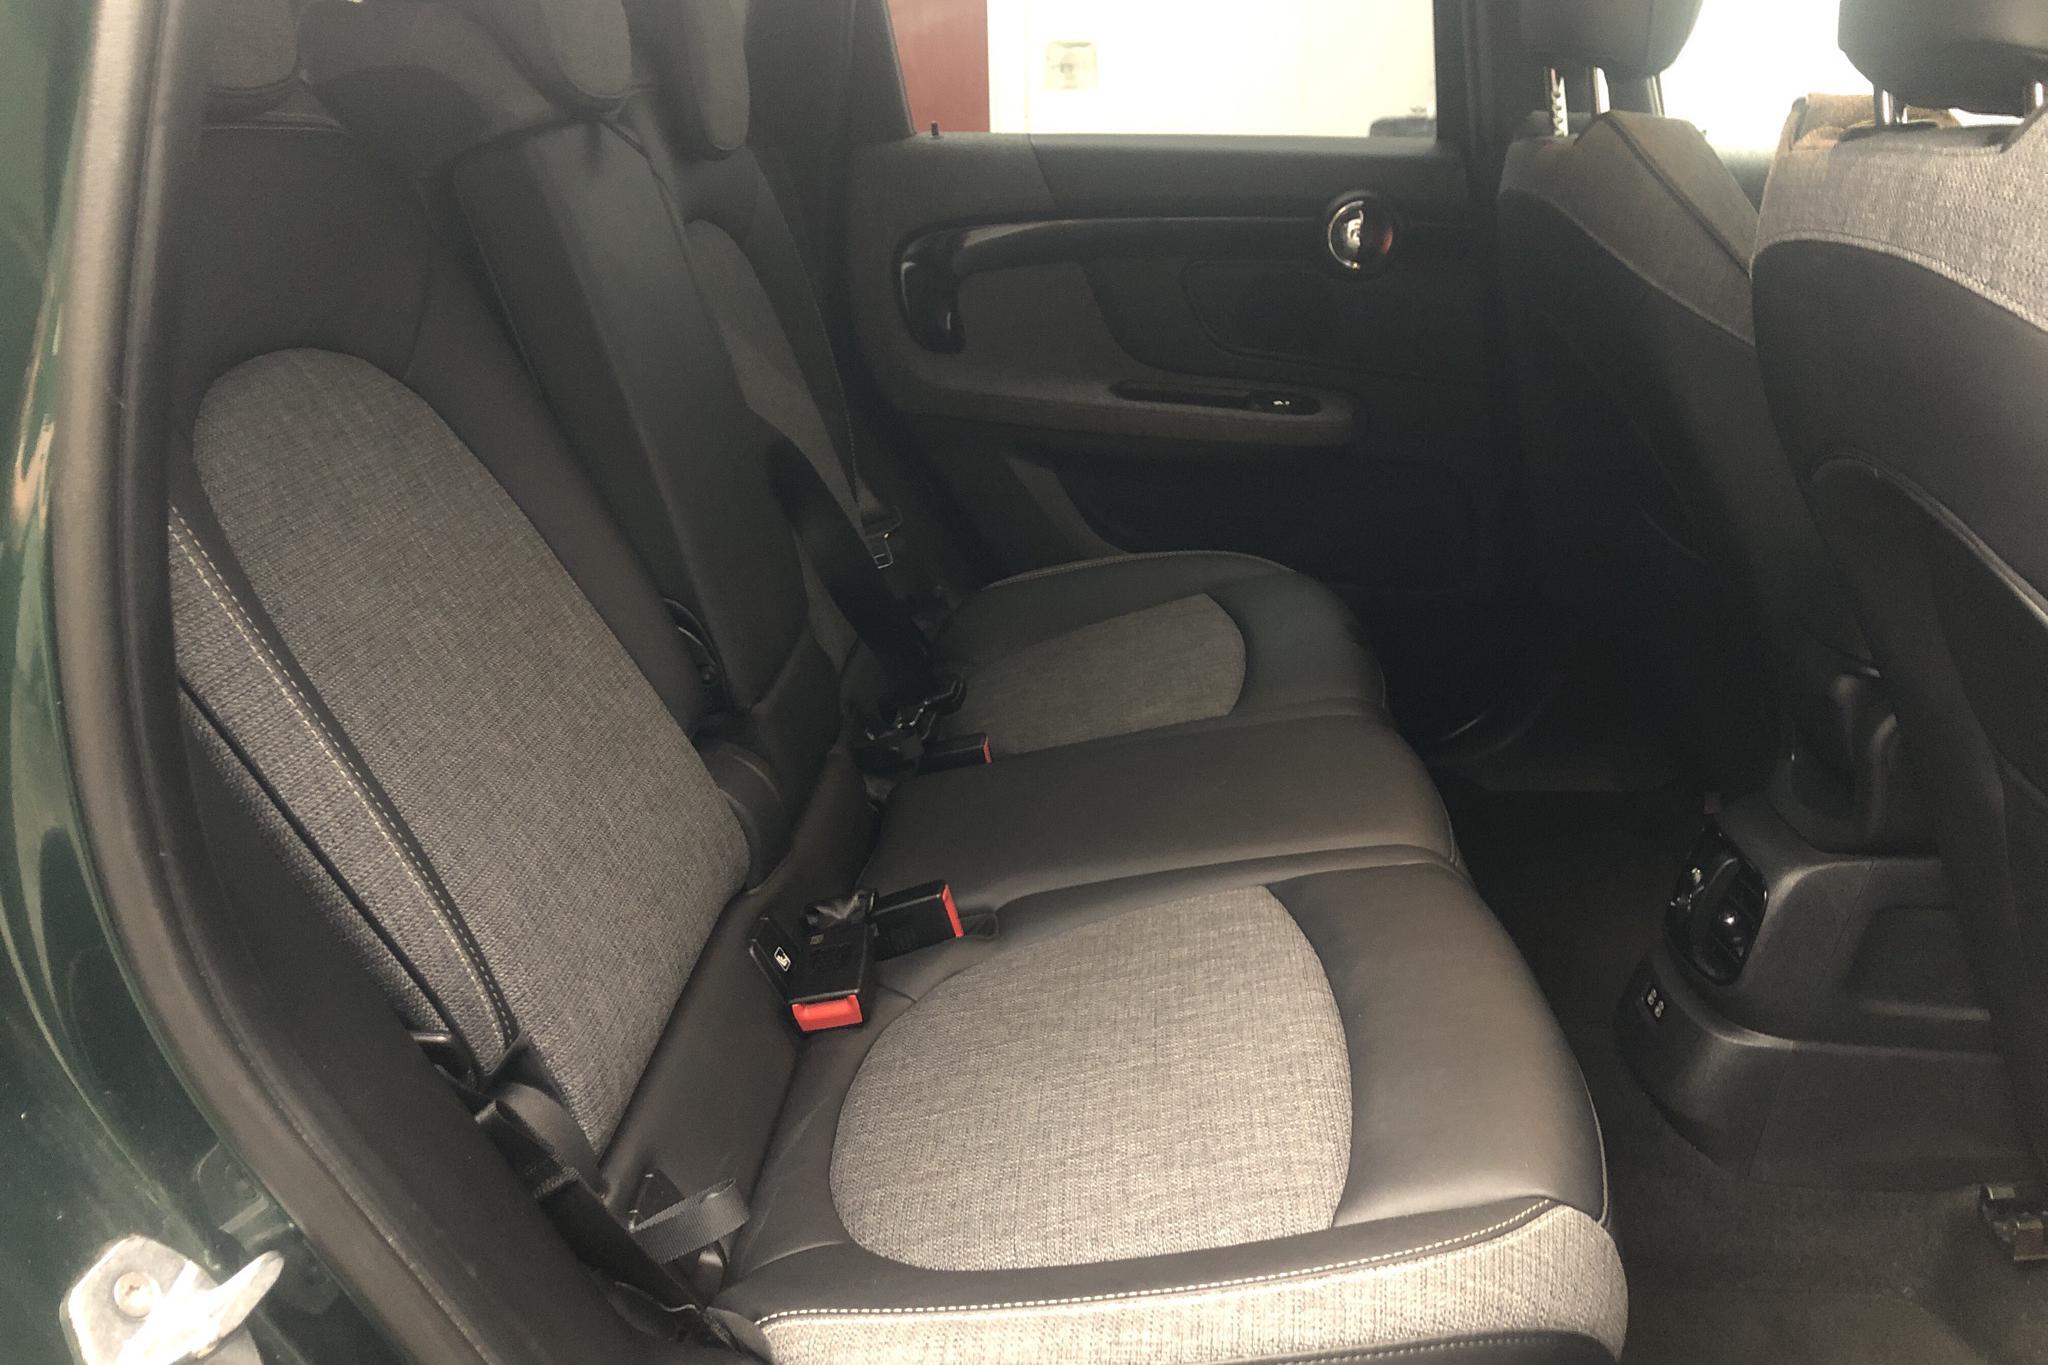 MINI Cooper S E ALL4 Countryman, F60 (224hk) - 45 850 km - Automatic - green - 2019